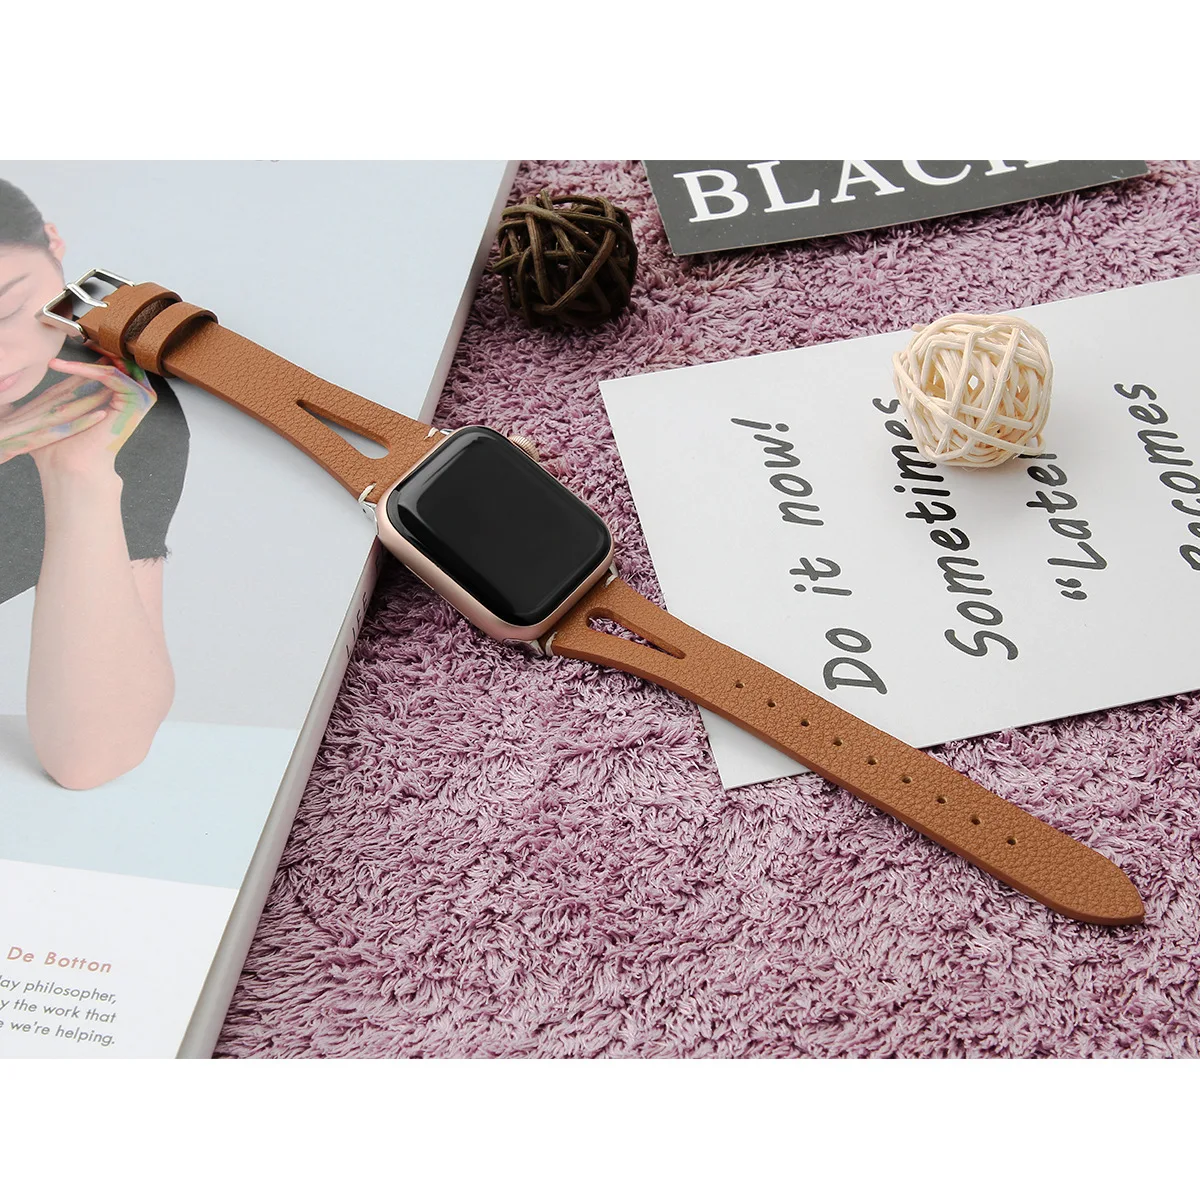 Кожаный браслет для Apple Watch 42 мм 38 мм 44 мм 40 мм сменный мужской Т-образный ремешок для iWatch серии 5 4 3 2 1 женский мужской браслет